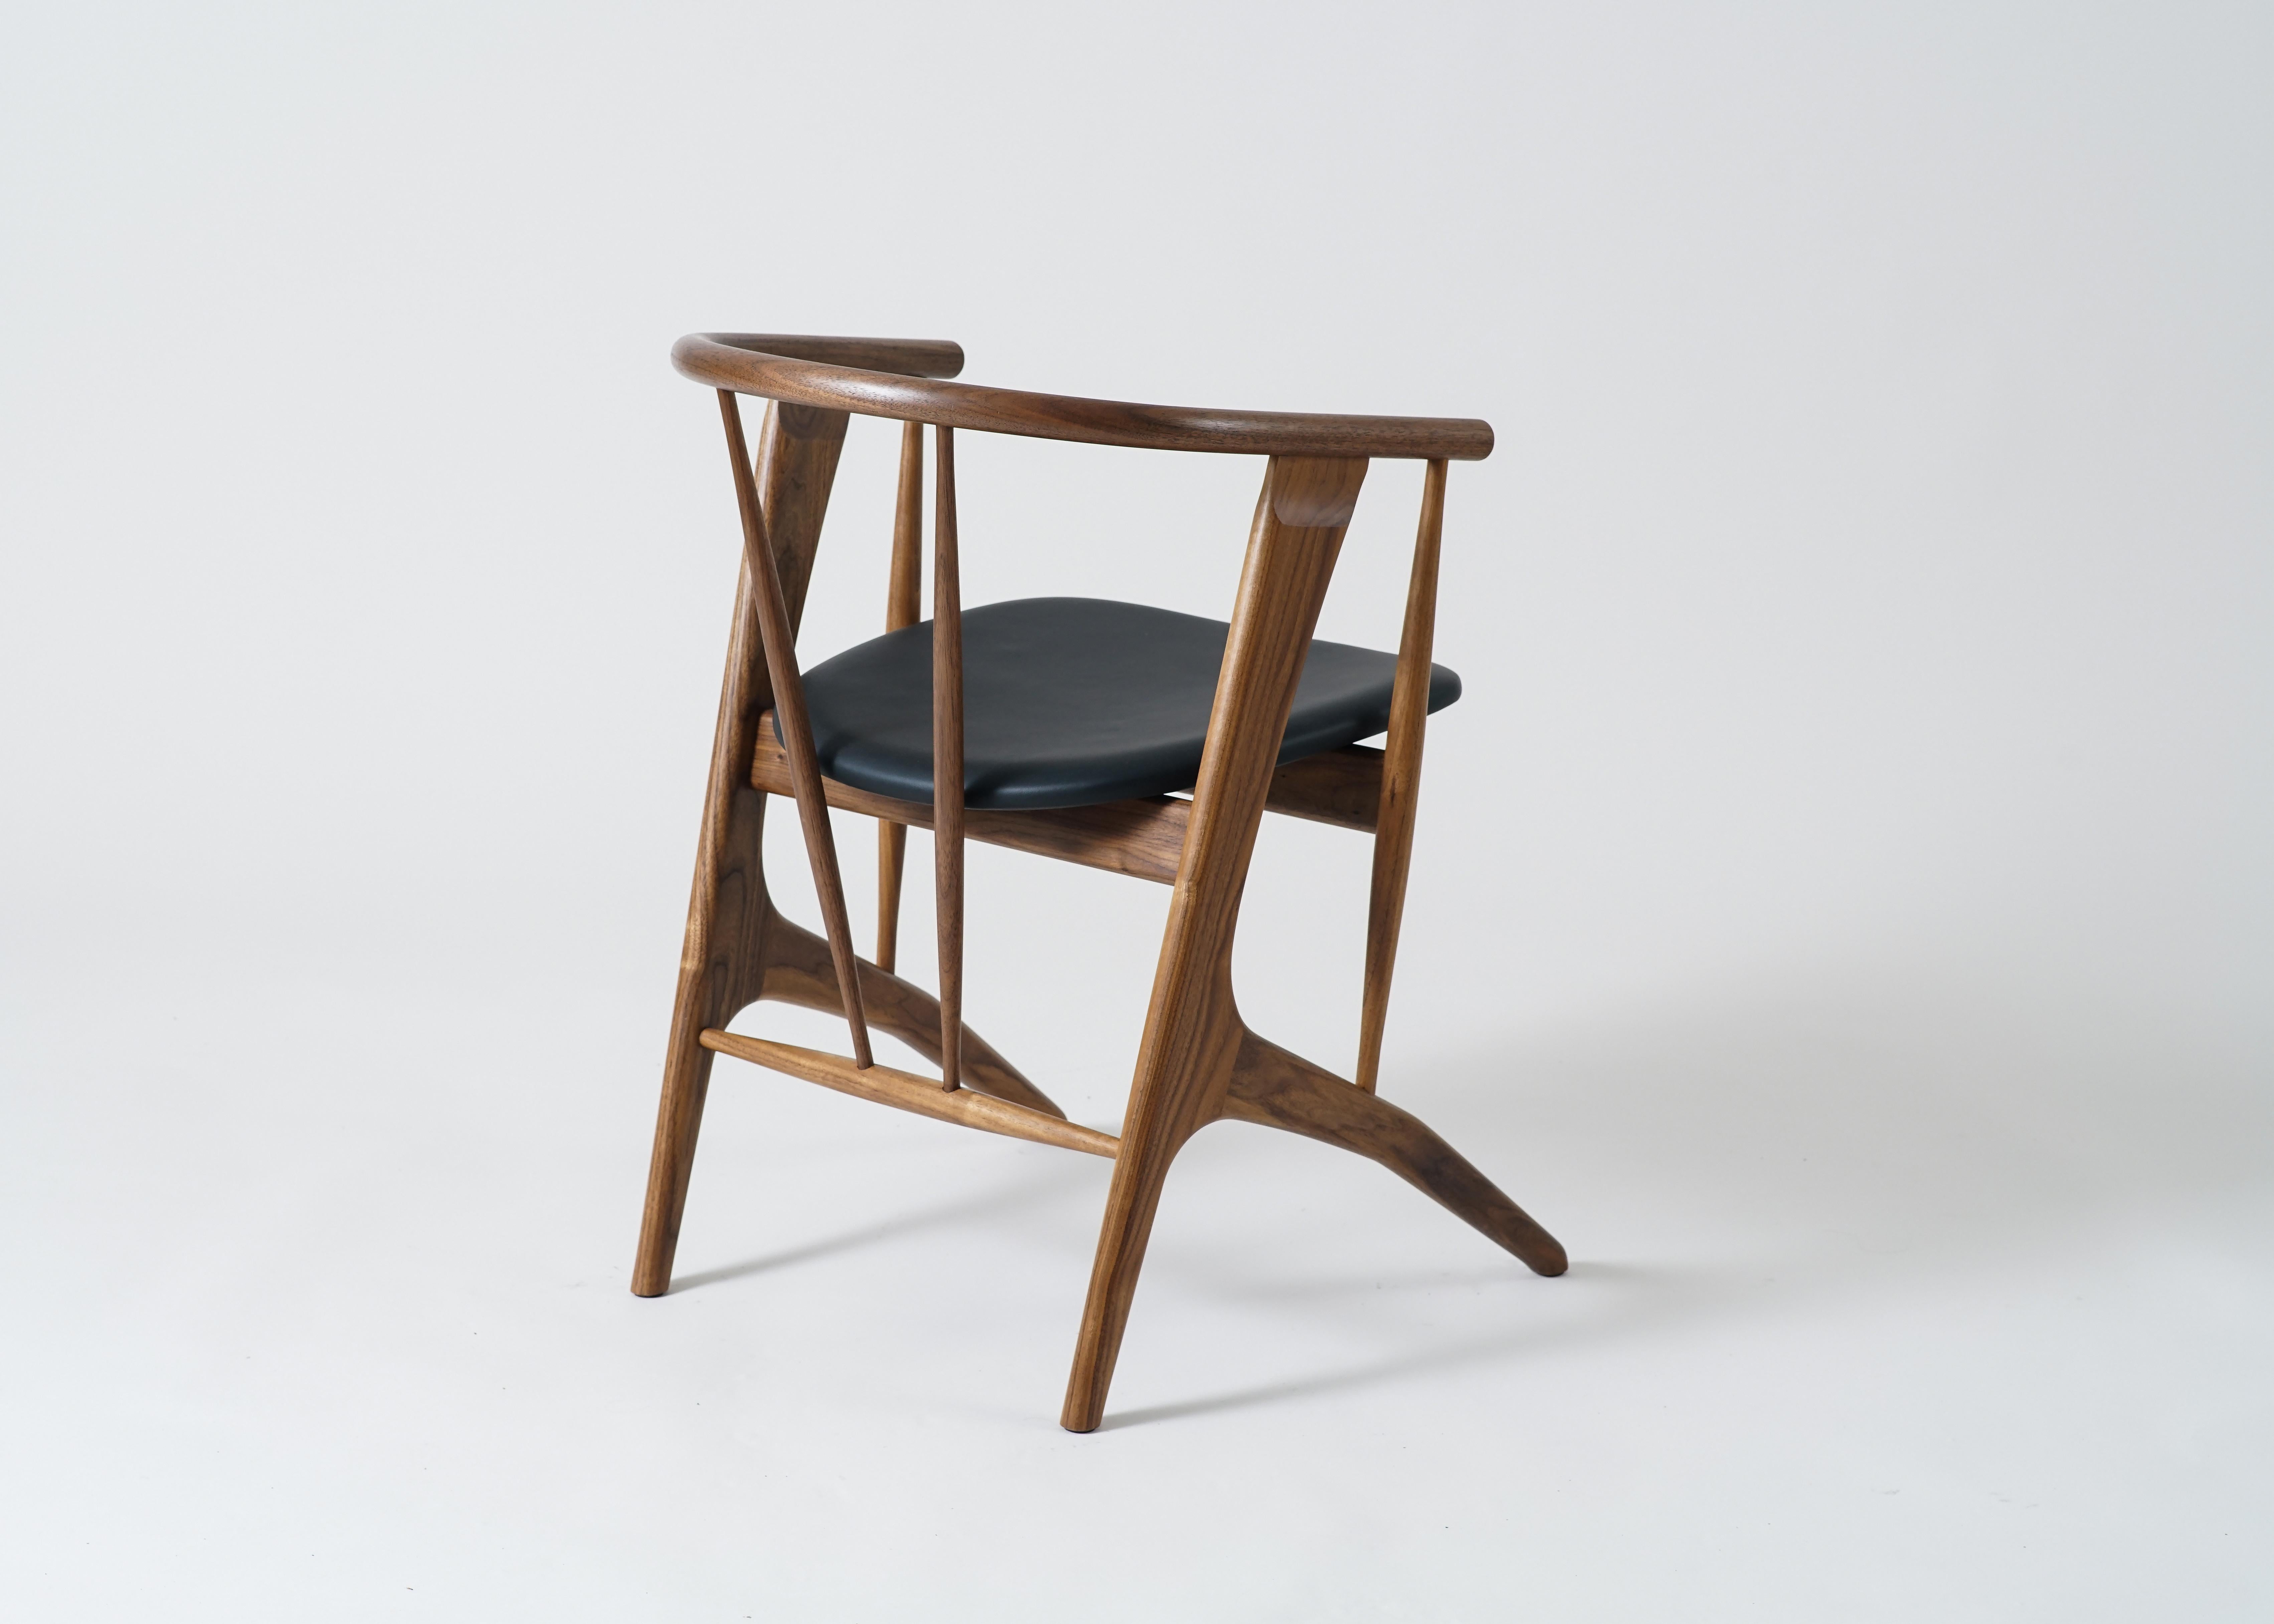 Le fauteuil Zoe de Phloem Studio est un fauteuil moderne et contemporain en bois massif fabriqué à la main sur commande. Zoe est un fauteuil léger très bien conçu et très confortable, conçu pour les longs dîners ou les soirées de travail. Le dos